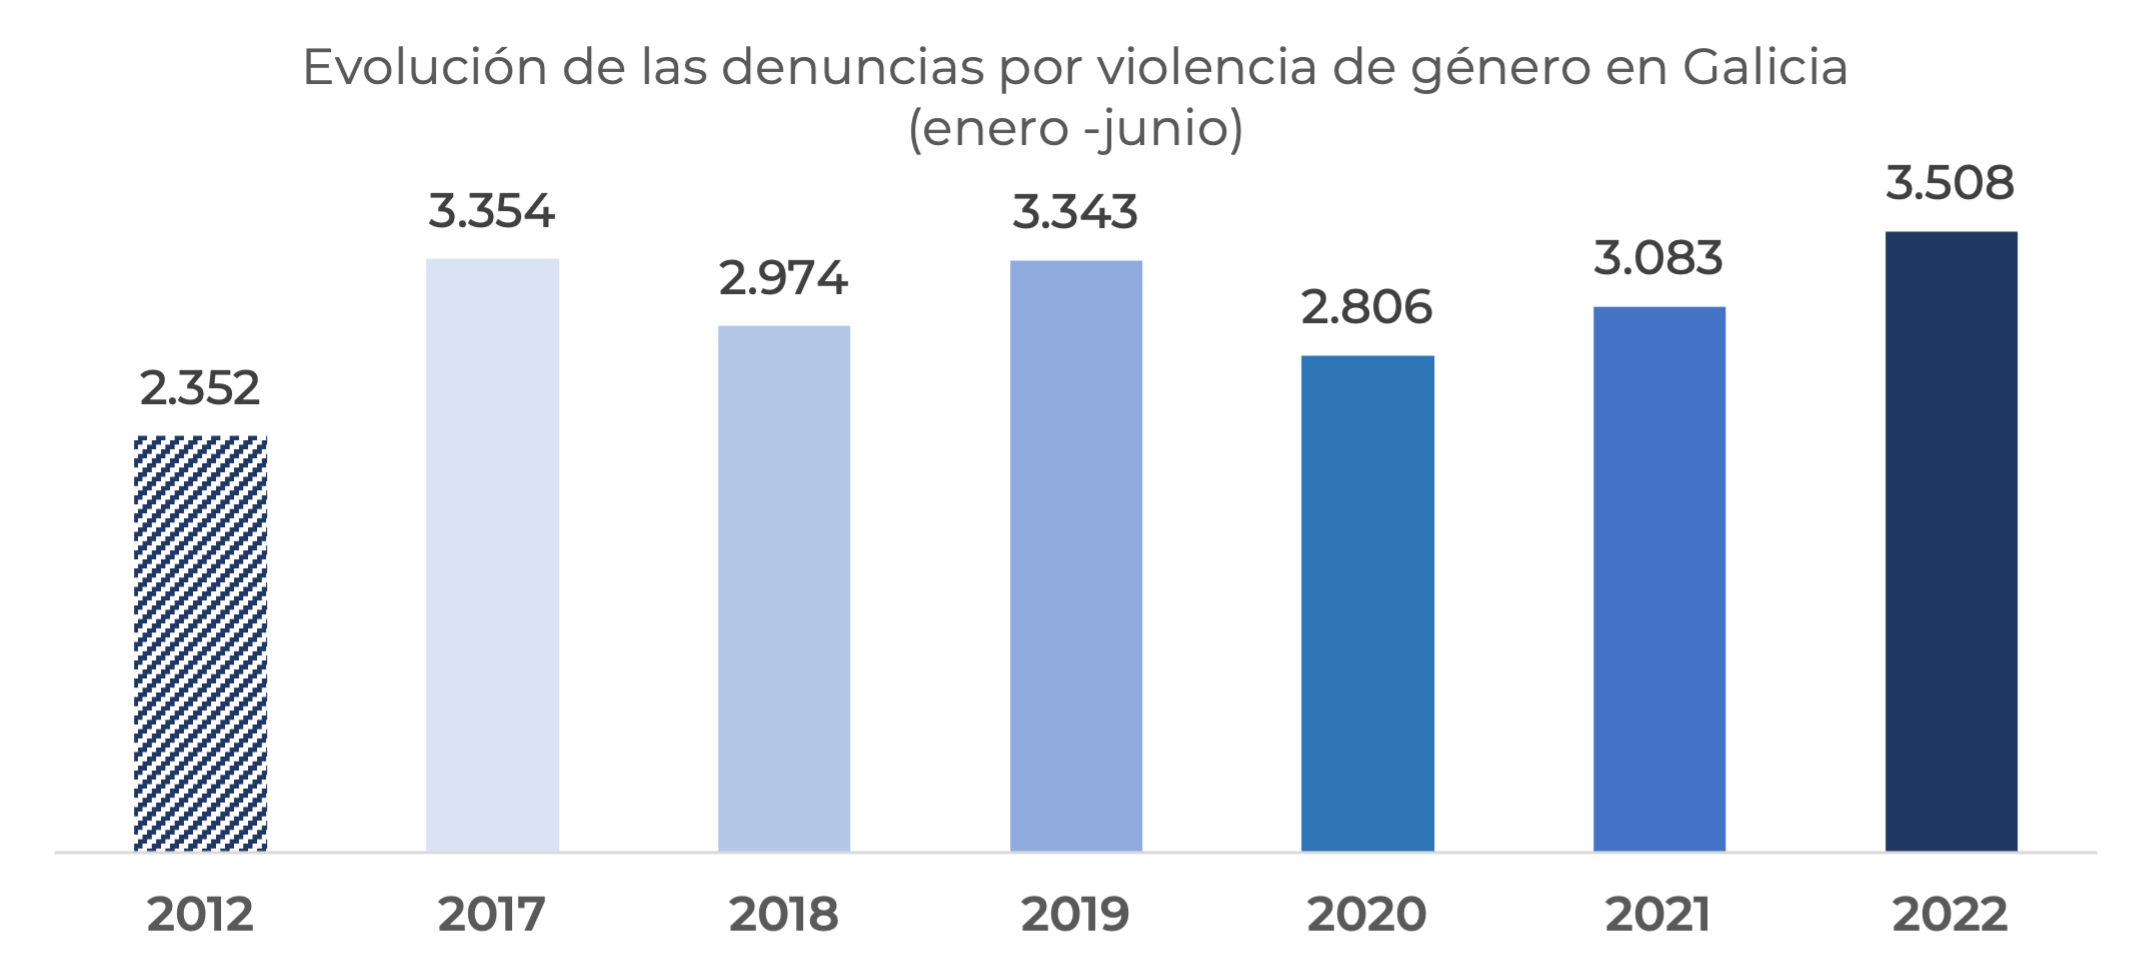 Le máis sobre o artigo As denuncias por violencia de xénero en Galicia medran un 49% en 10 anos